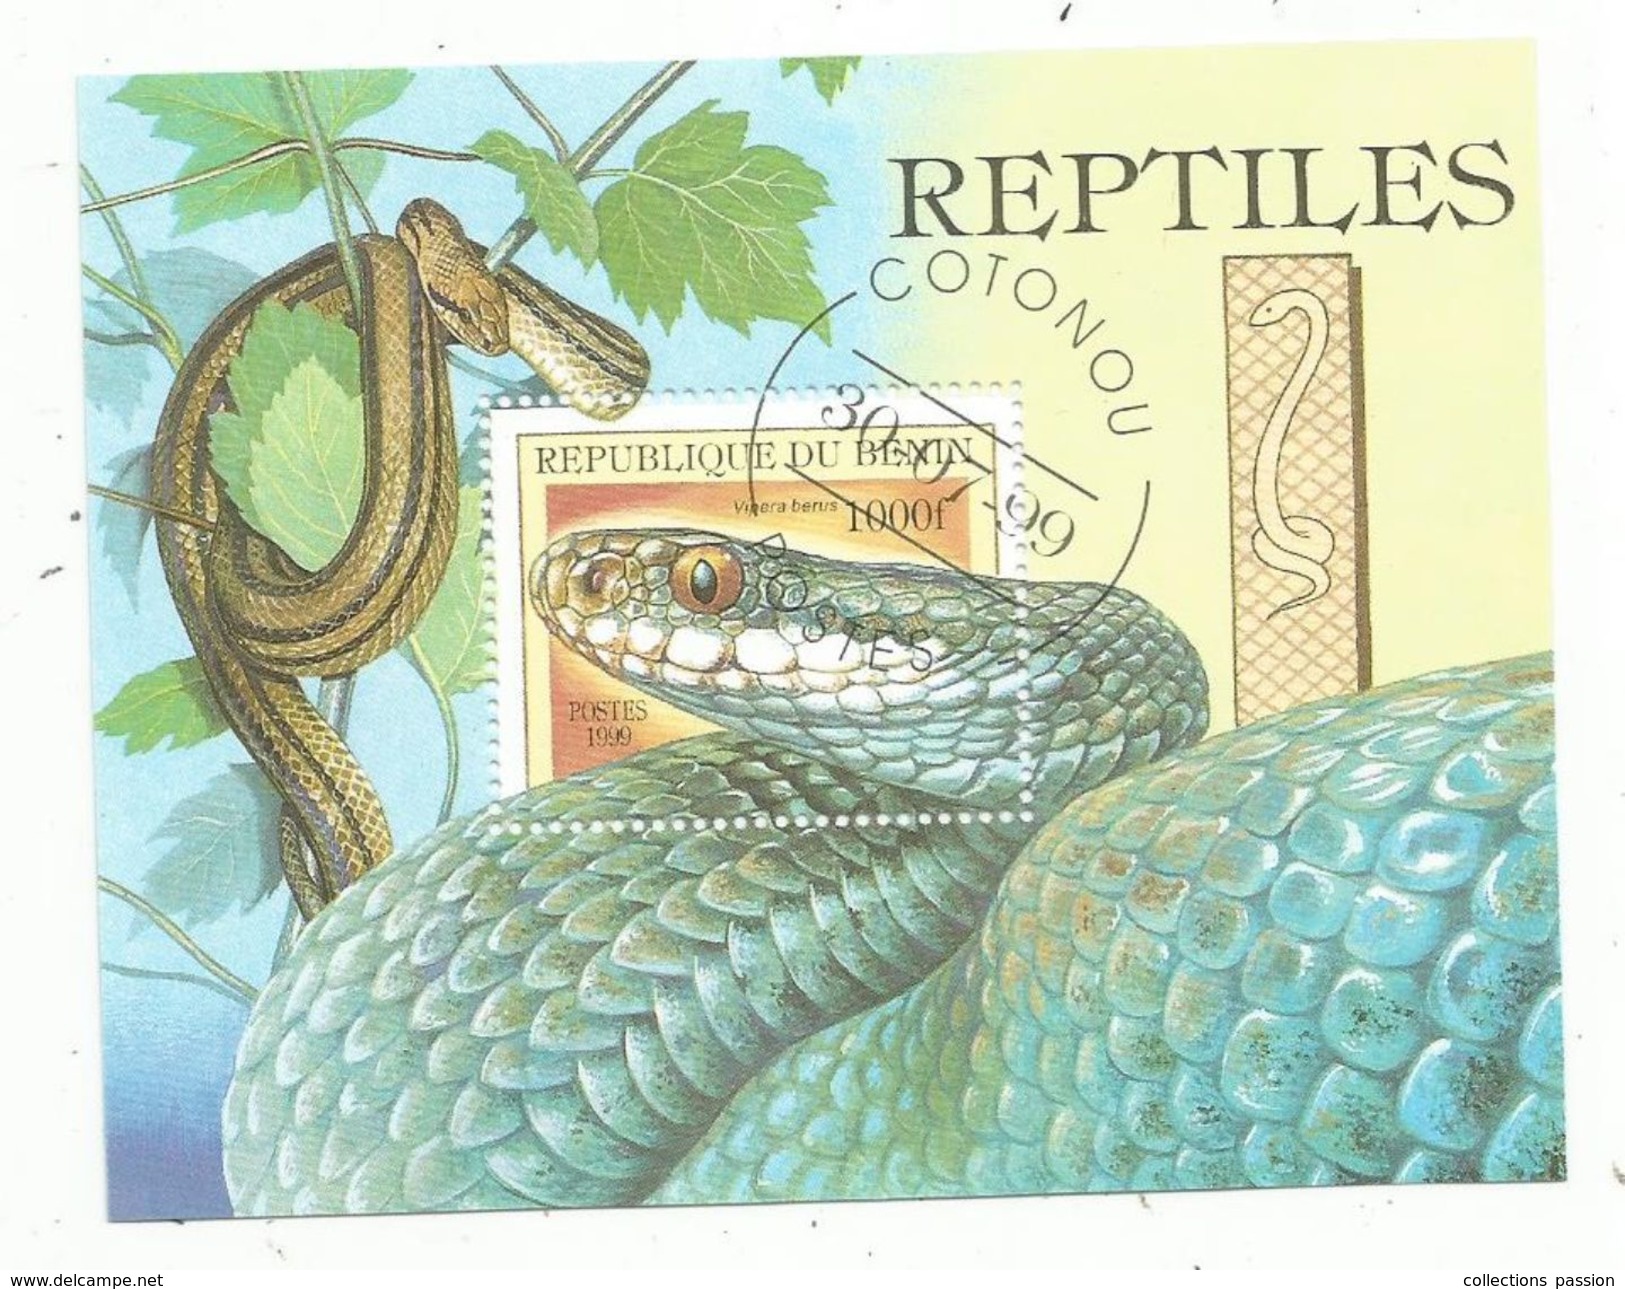 Timbre , REPTILES , Serpents , REPUBLIQUE DU BENIN , 1000f , Cotonou , 1999 , Vipera Berus - Serpientes